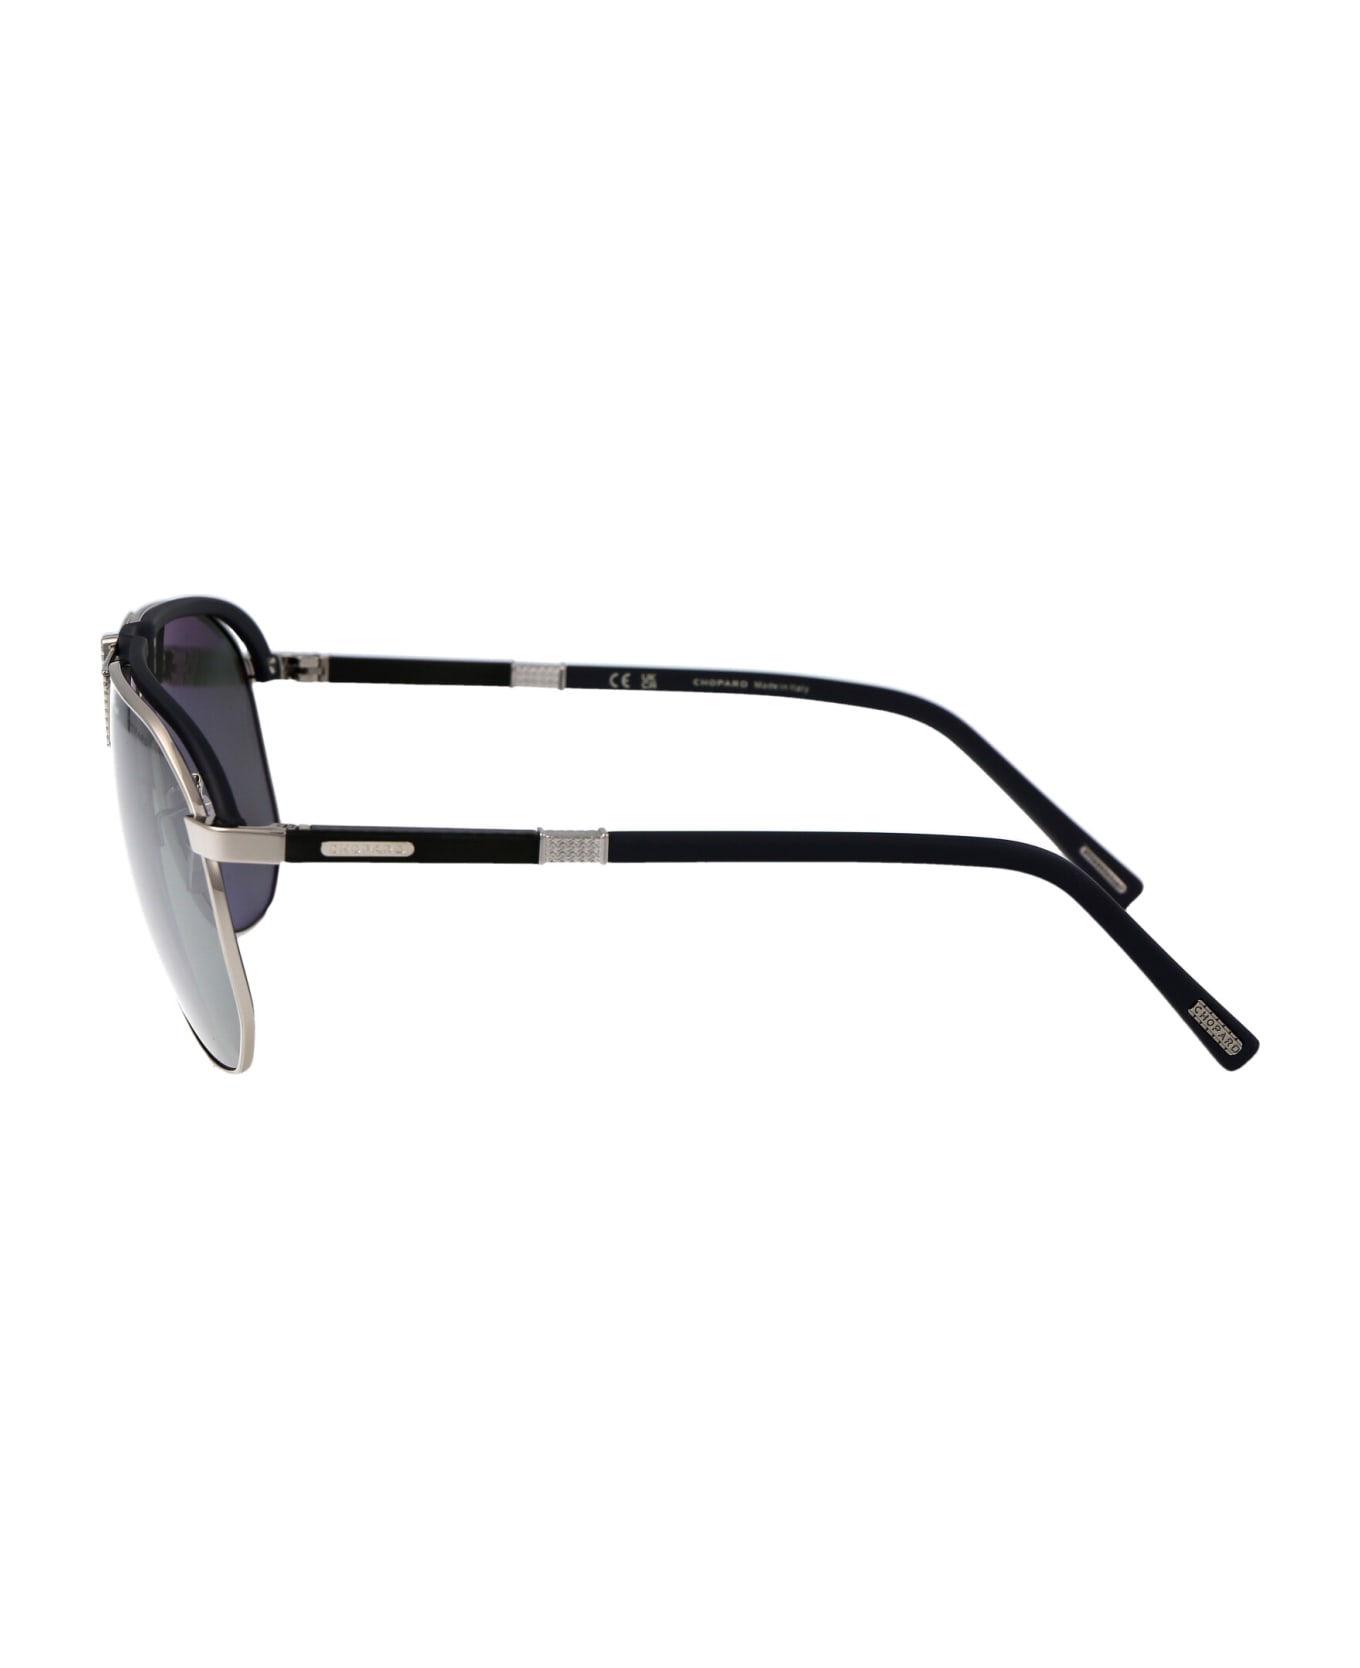 Chopard Schf82 Sunglasses - 579P GREY